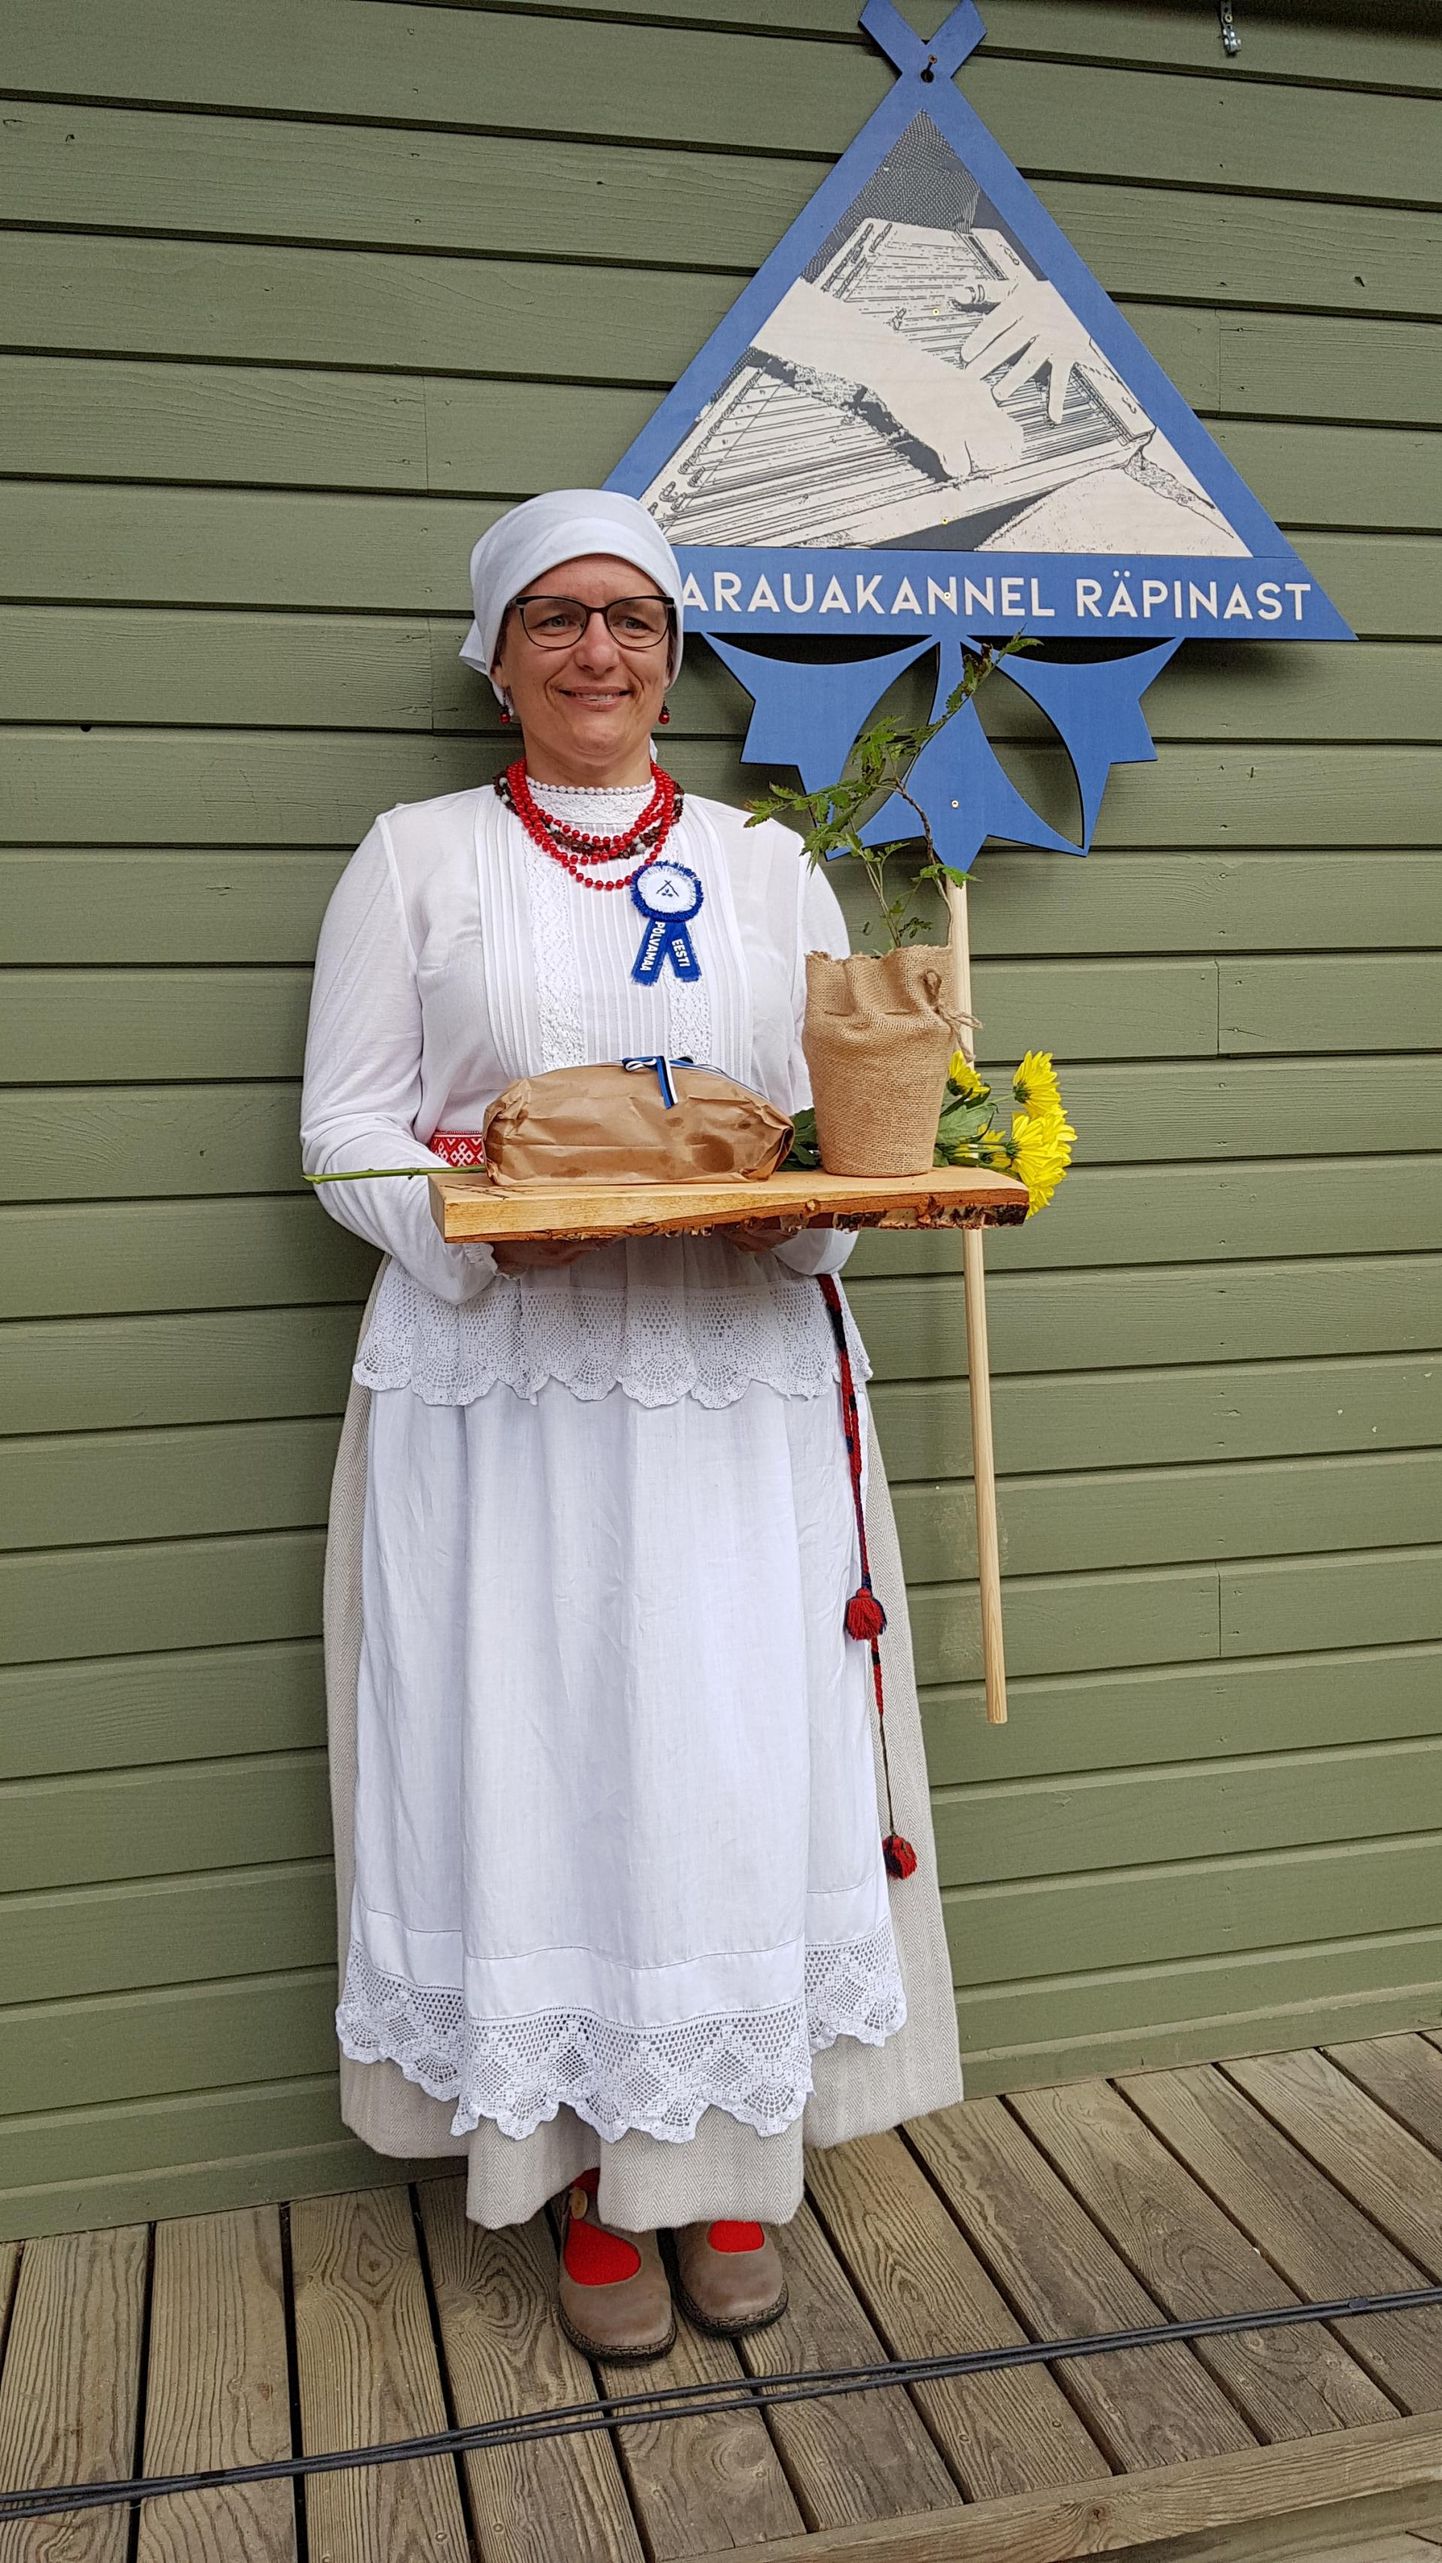 Krista Sildoja hinnangul on pärimuskultuur Eestimaa kagunurgas elujõuline, kuna siin elatakse veel loodusega käsikäes.
Raivo Sildoja